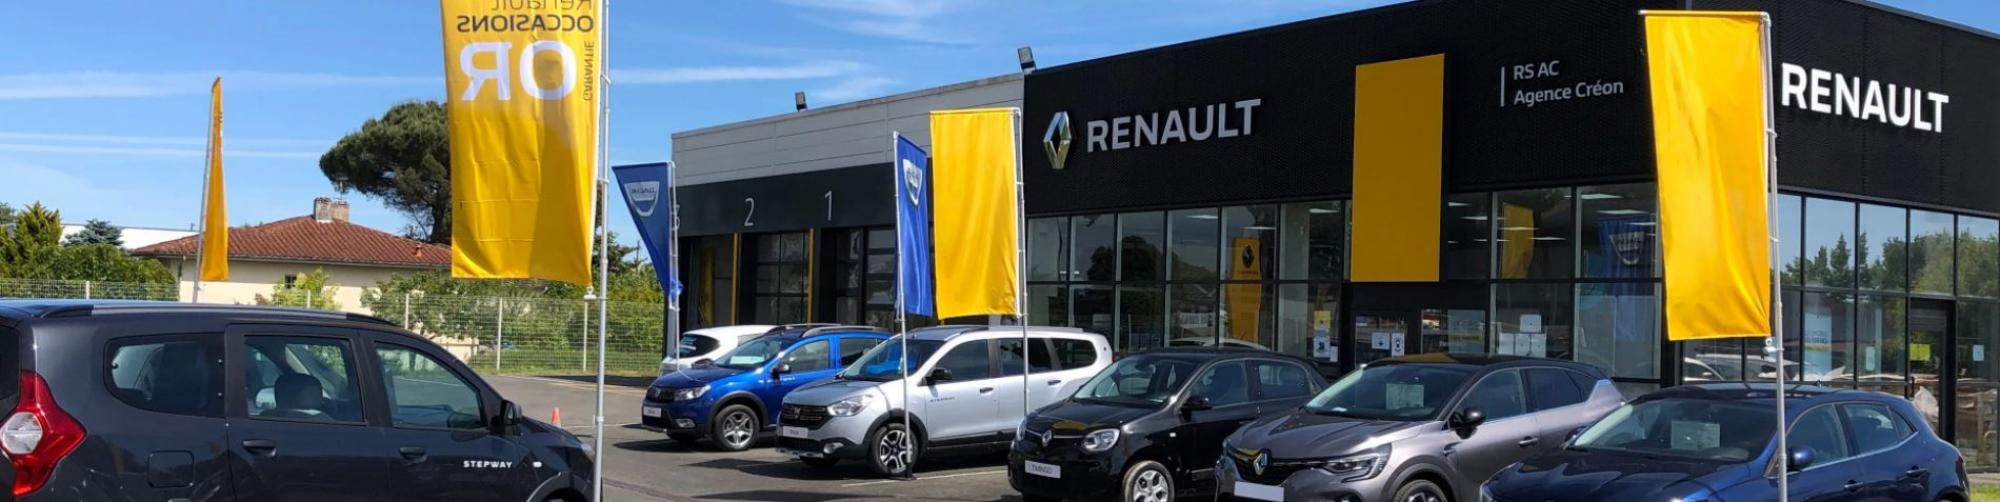 Renault Créon